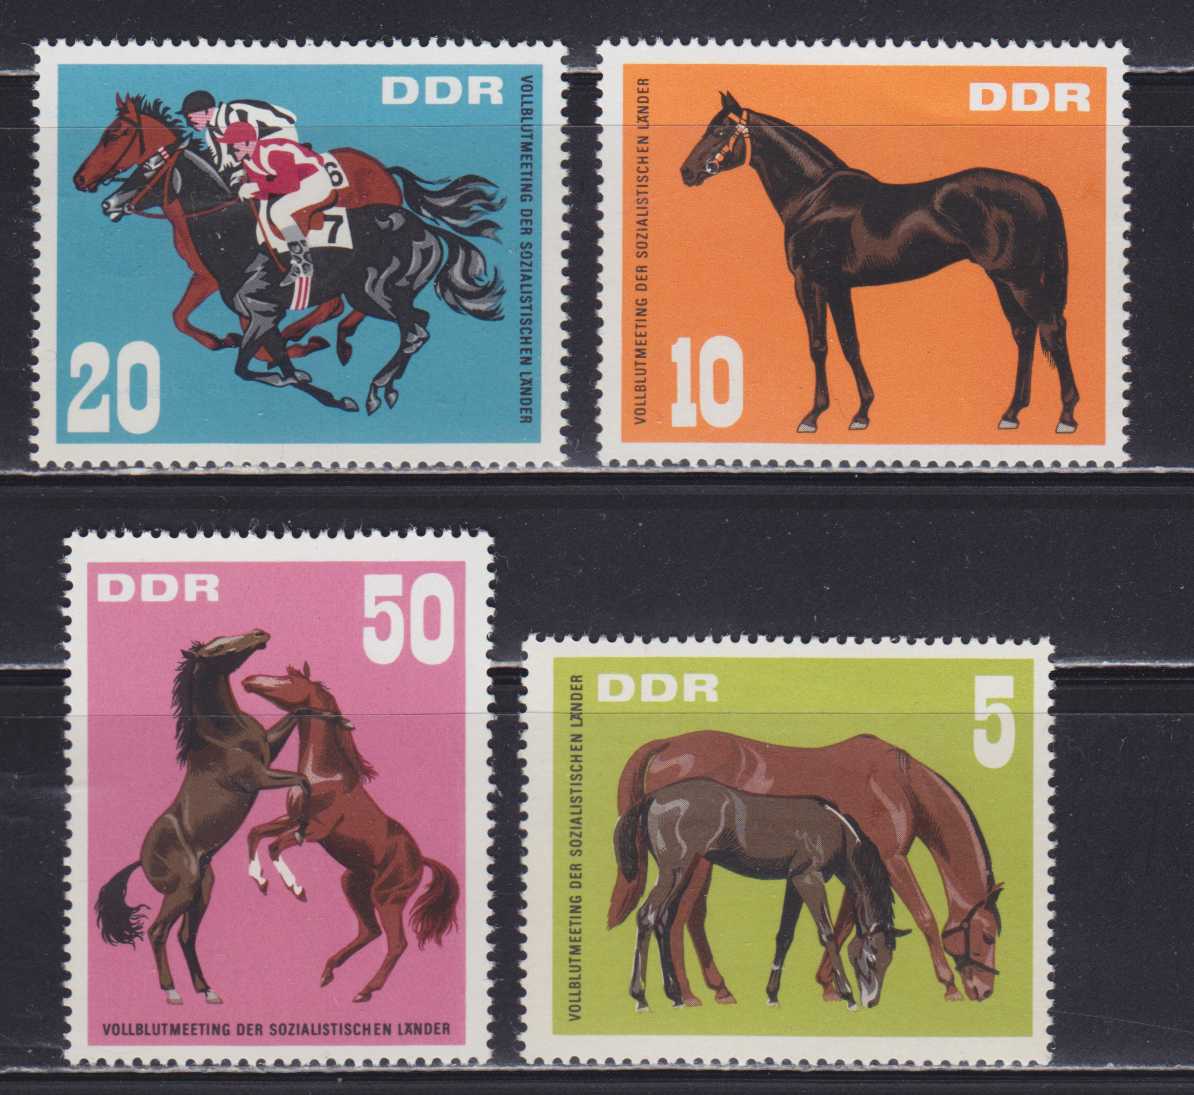 Лошадка марка. Марки лошади. Лошади на почтовых марках. Почтовые марки кони DDR.